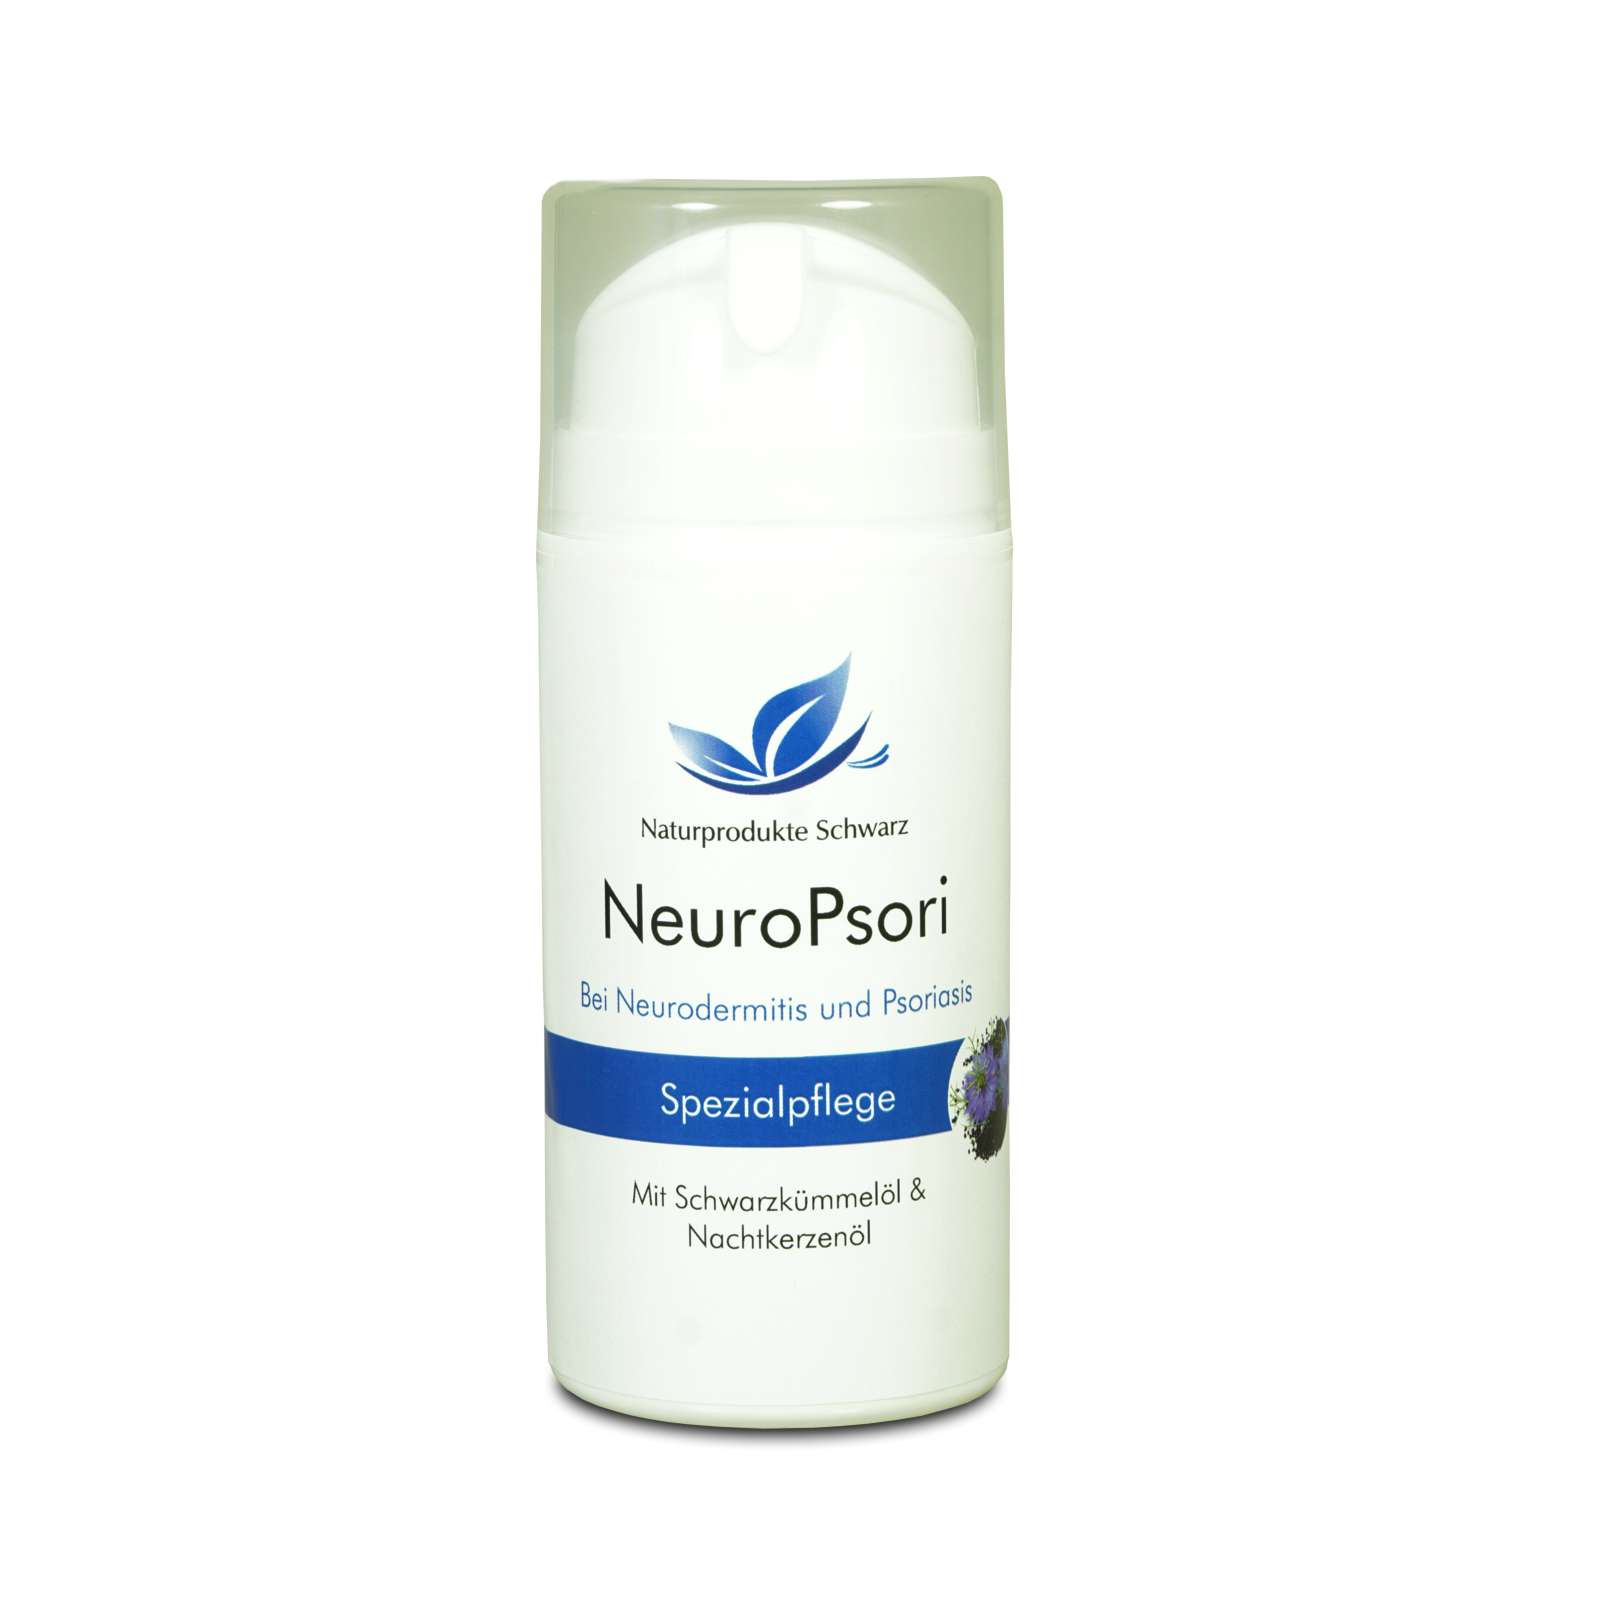 NeuroPsori Spezialpflege Creme - Pflege bei Neurodermitis und Schuppenflechte